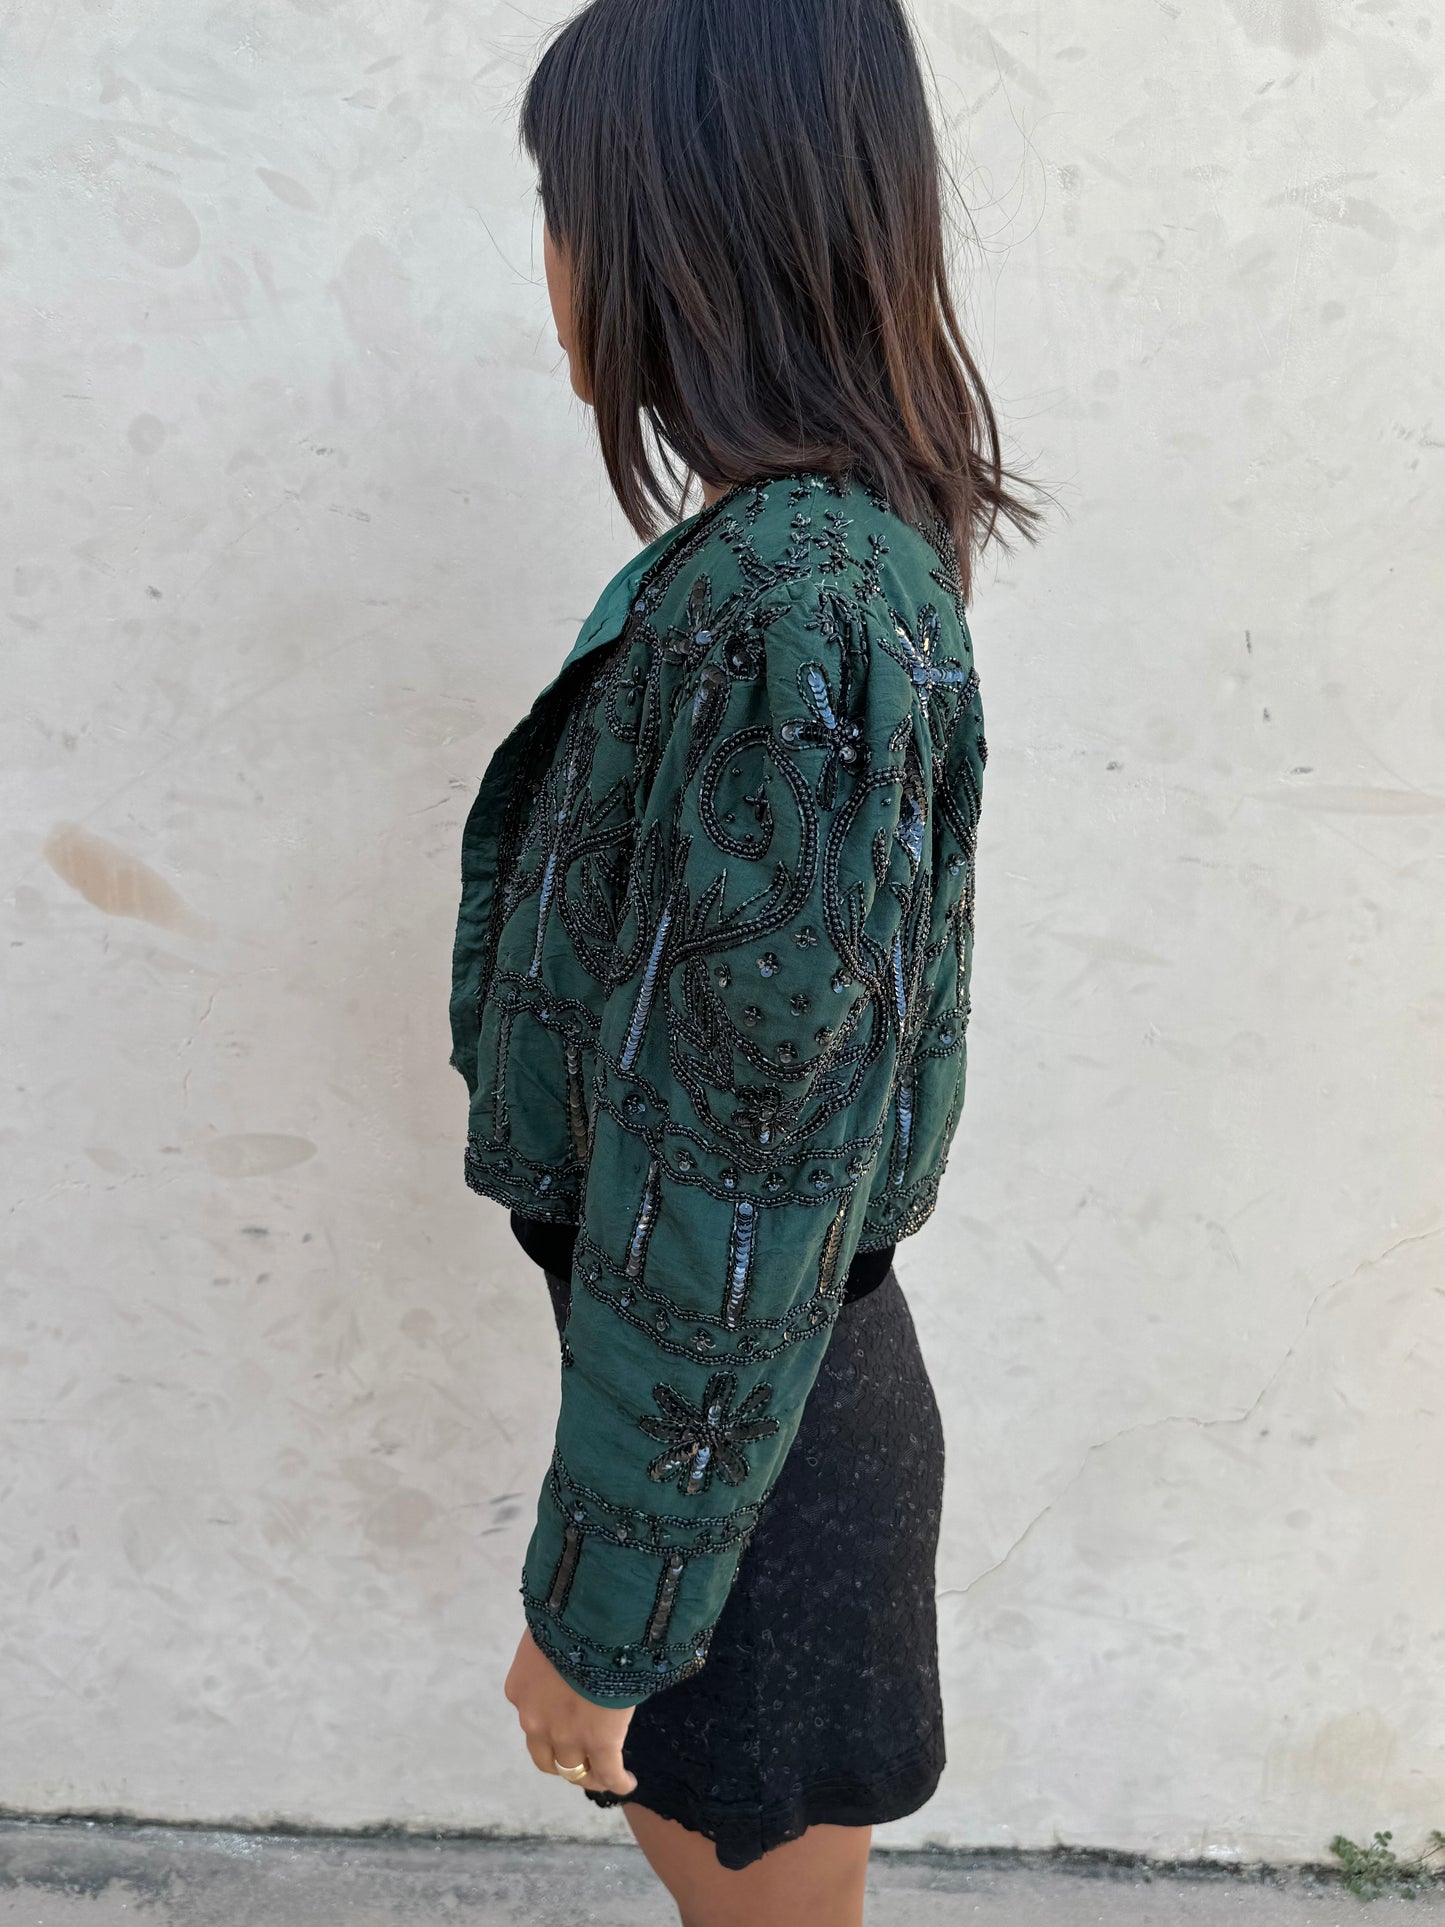 Denise Elle Vintage Green & Black Silk Embellished Cropped Evening Jacket